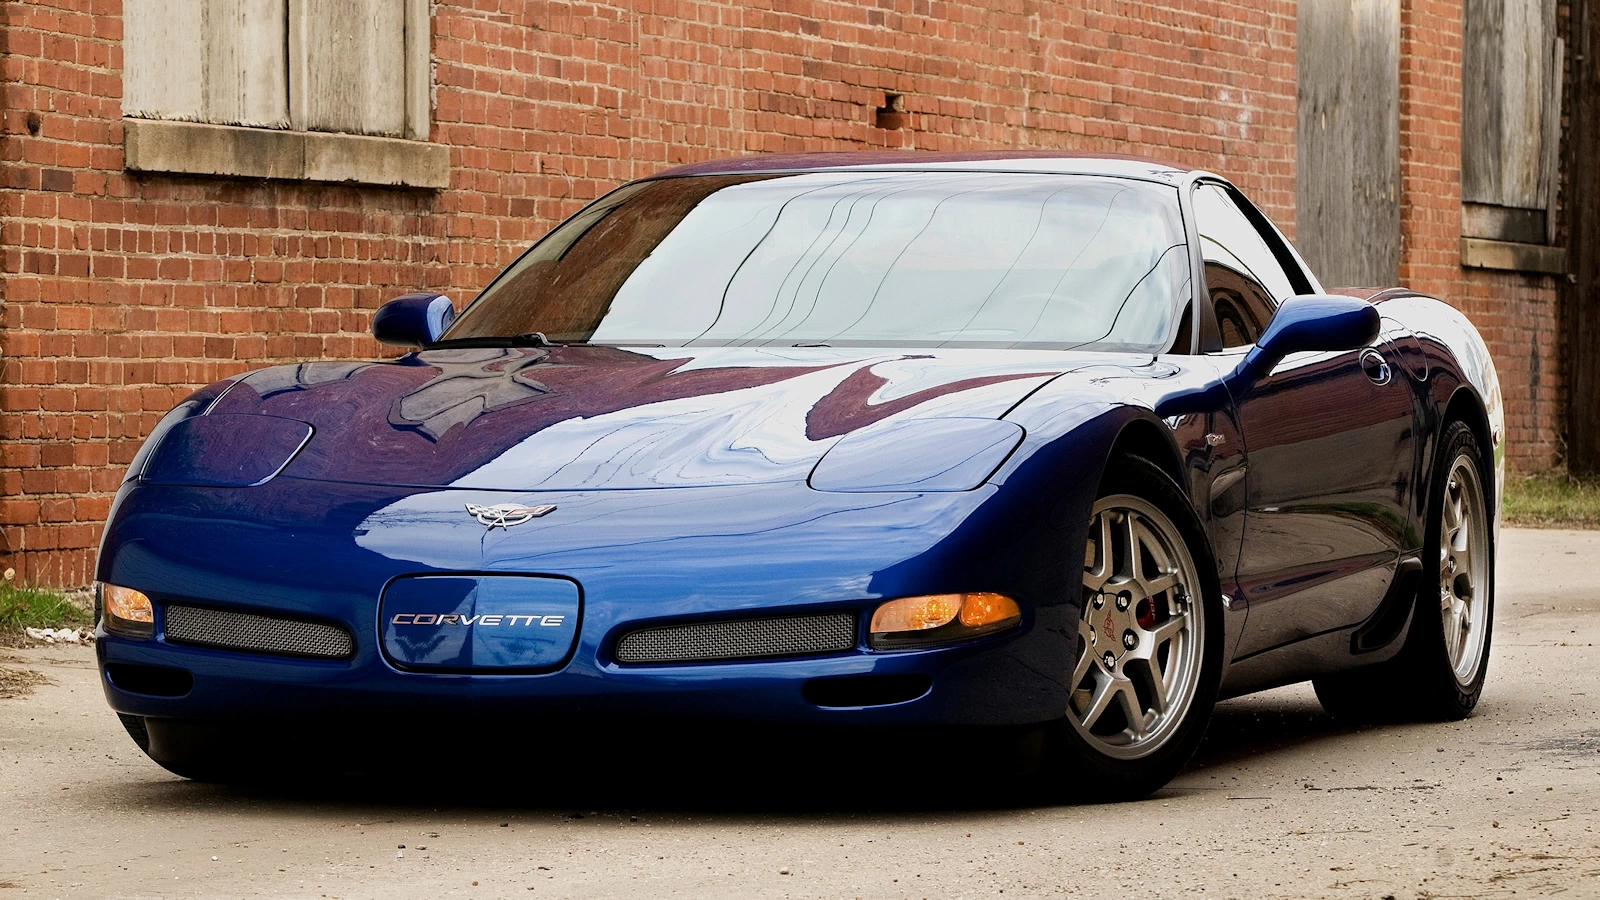 Corvette Generations/C5/C5 2003 Blue Front 2.webp